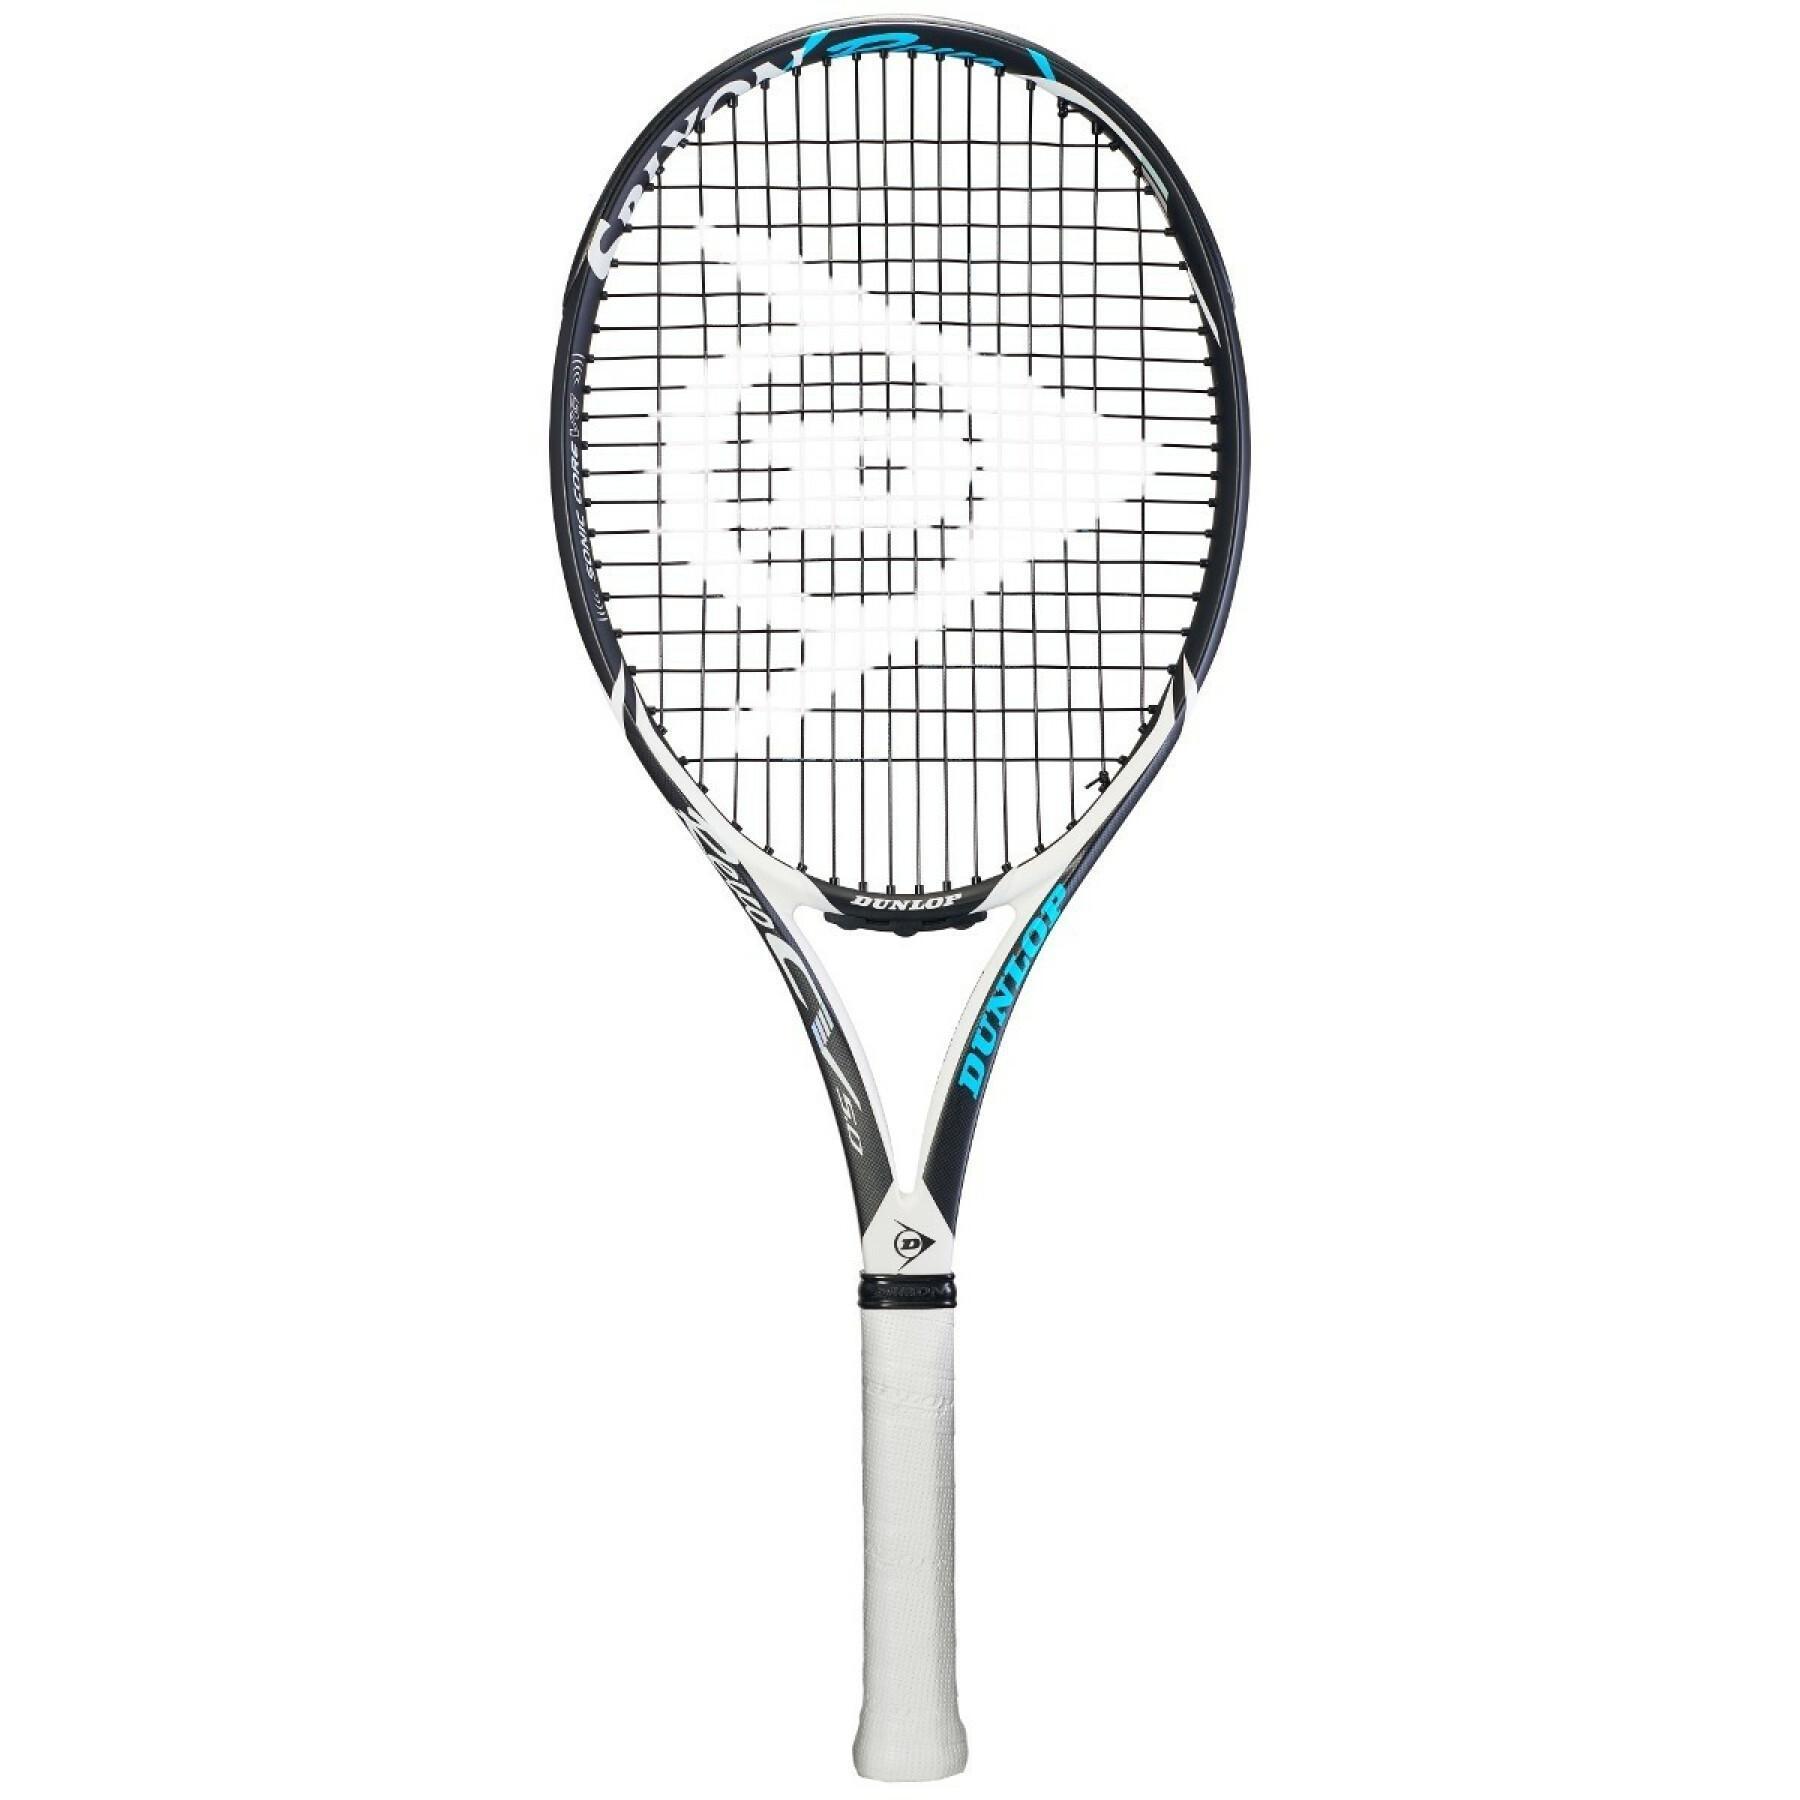 Racchetta da tennis Dunlop Tf Srx 18Revo cv 5.0 G2